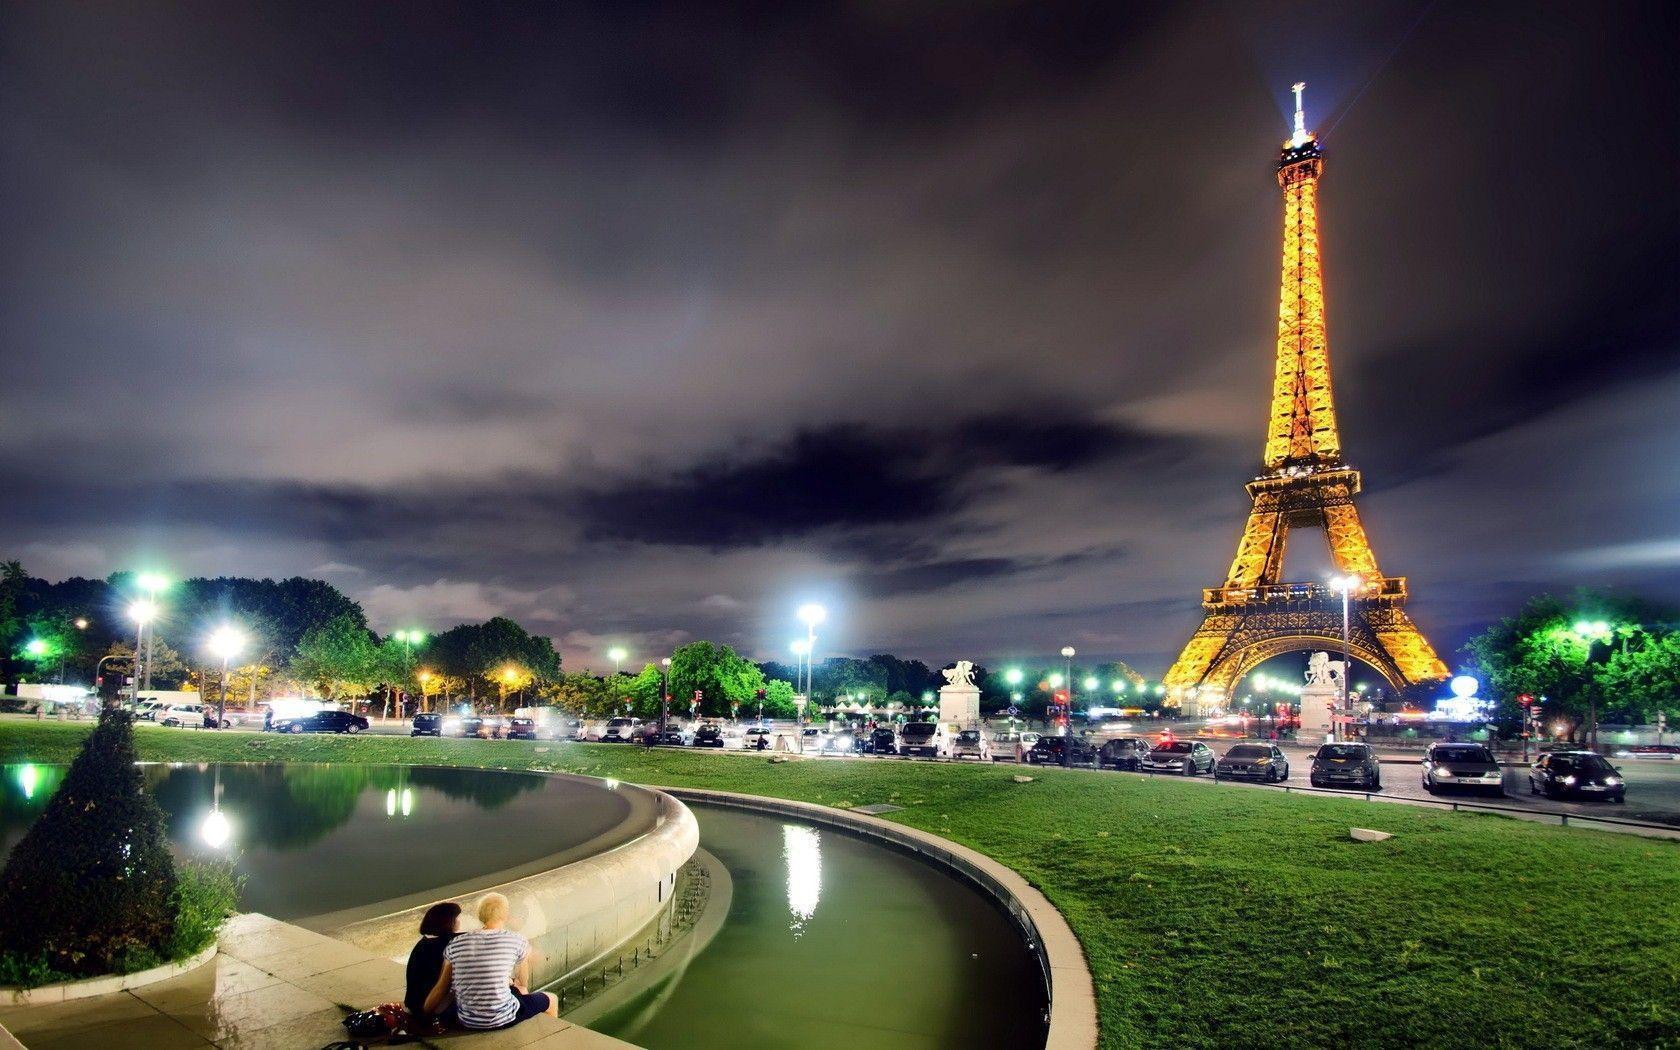 Paris HD Wallpaper Image Picture Photo Download